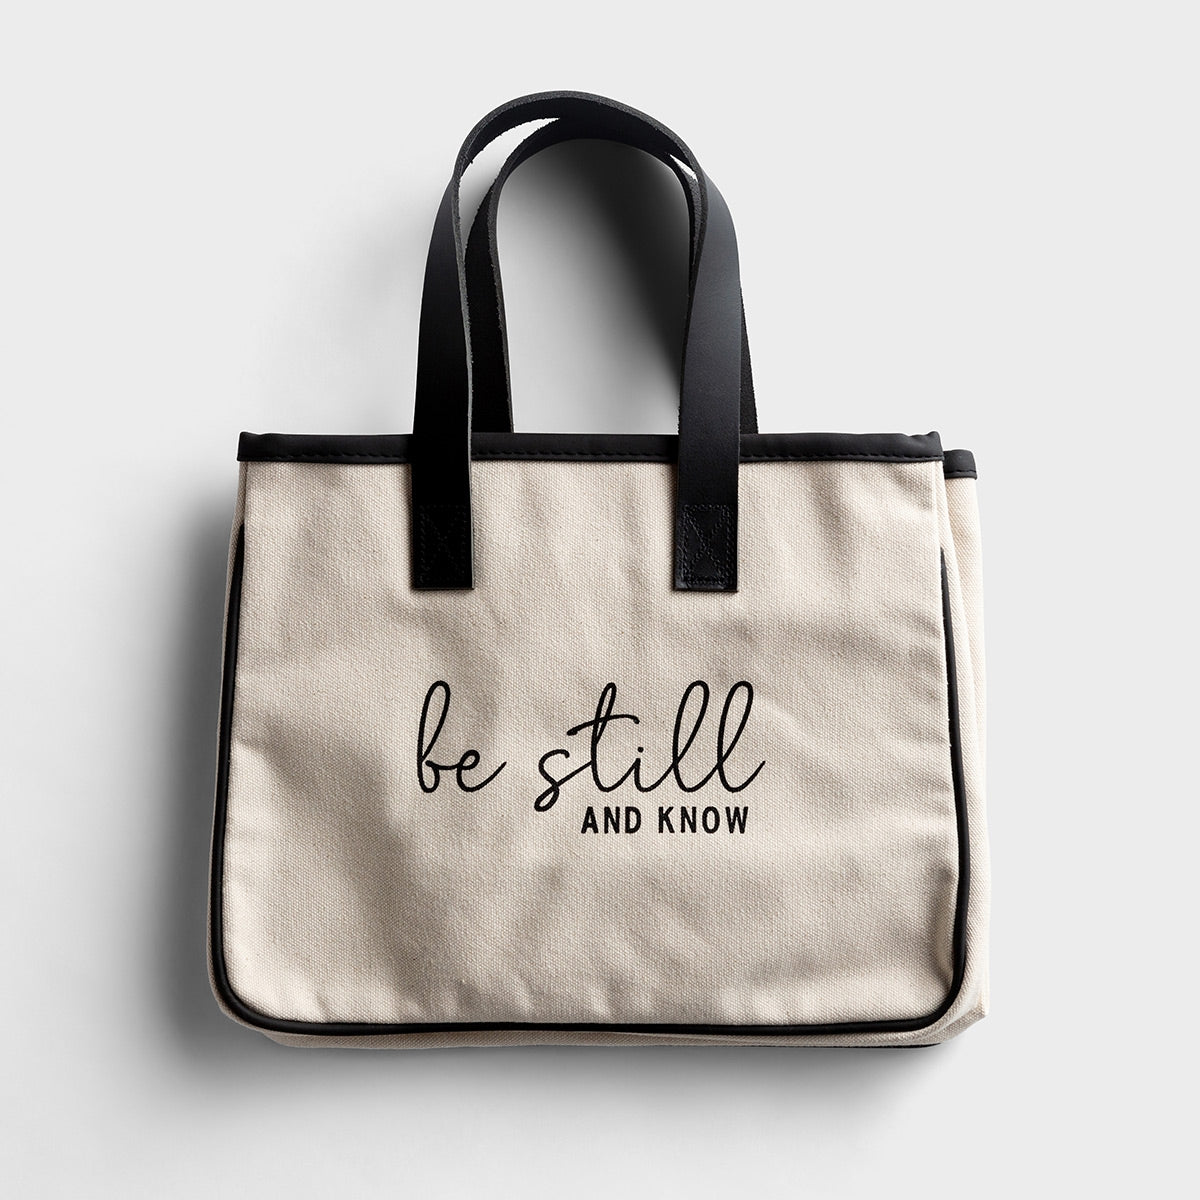 Mini Canvas Tote Bag - Be Still & Know